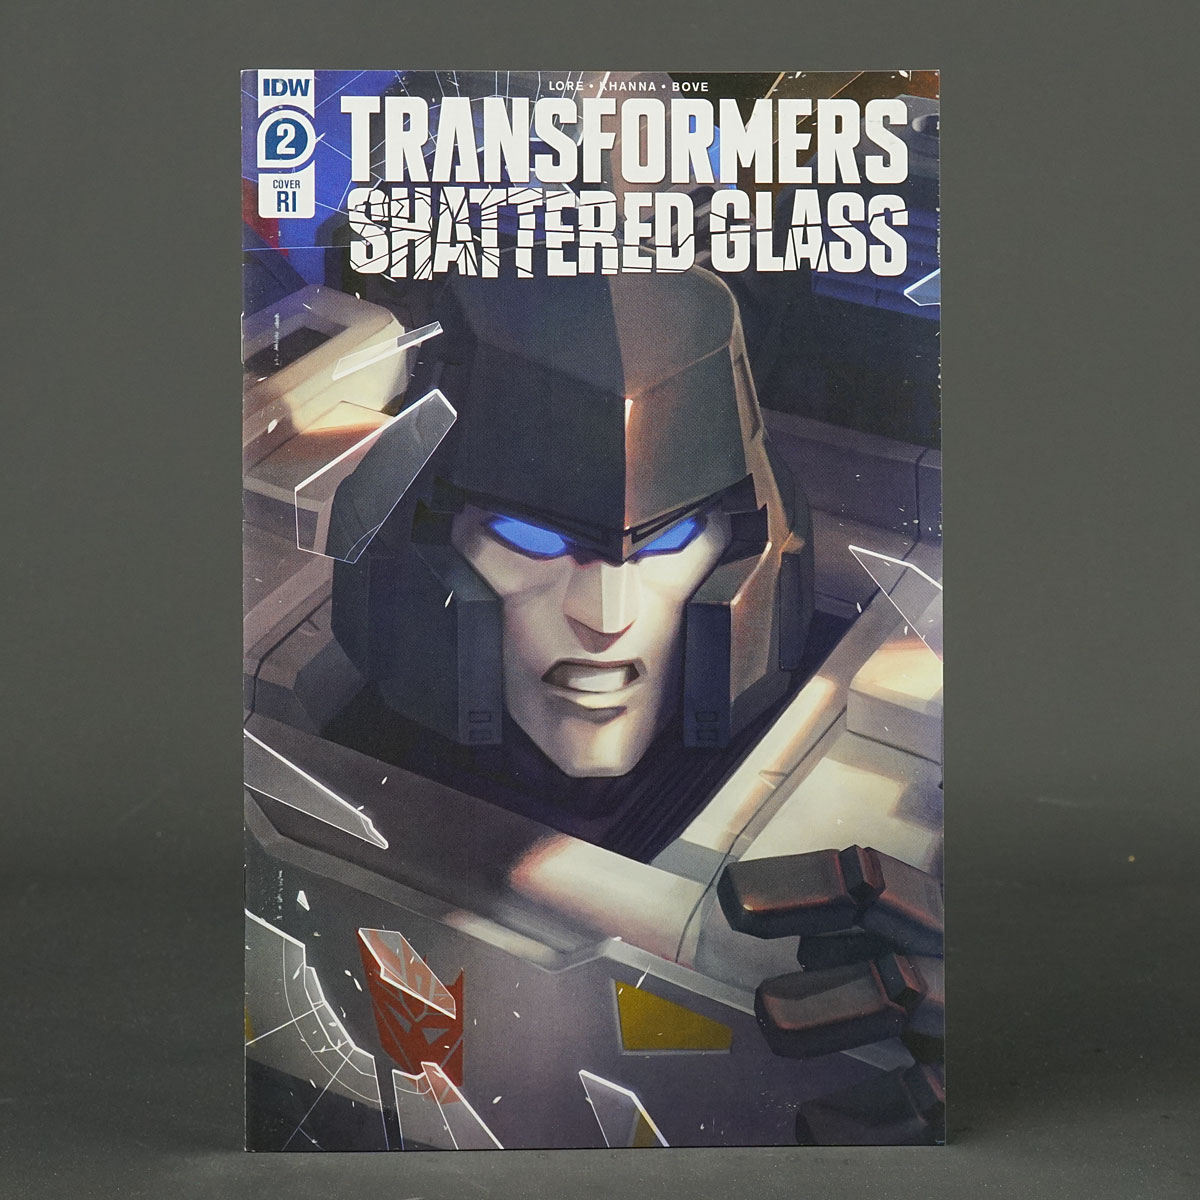 Transformers SHATTERED GLASS #2 RI 1:10 IDW Comics 2RI Pitre-Durocher 230926X